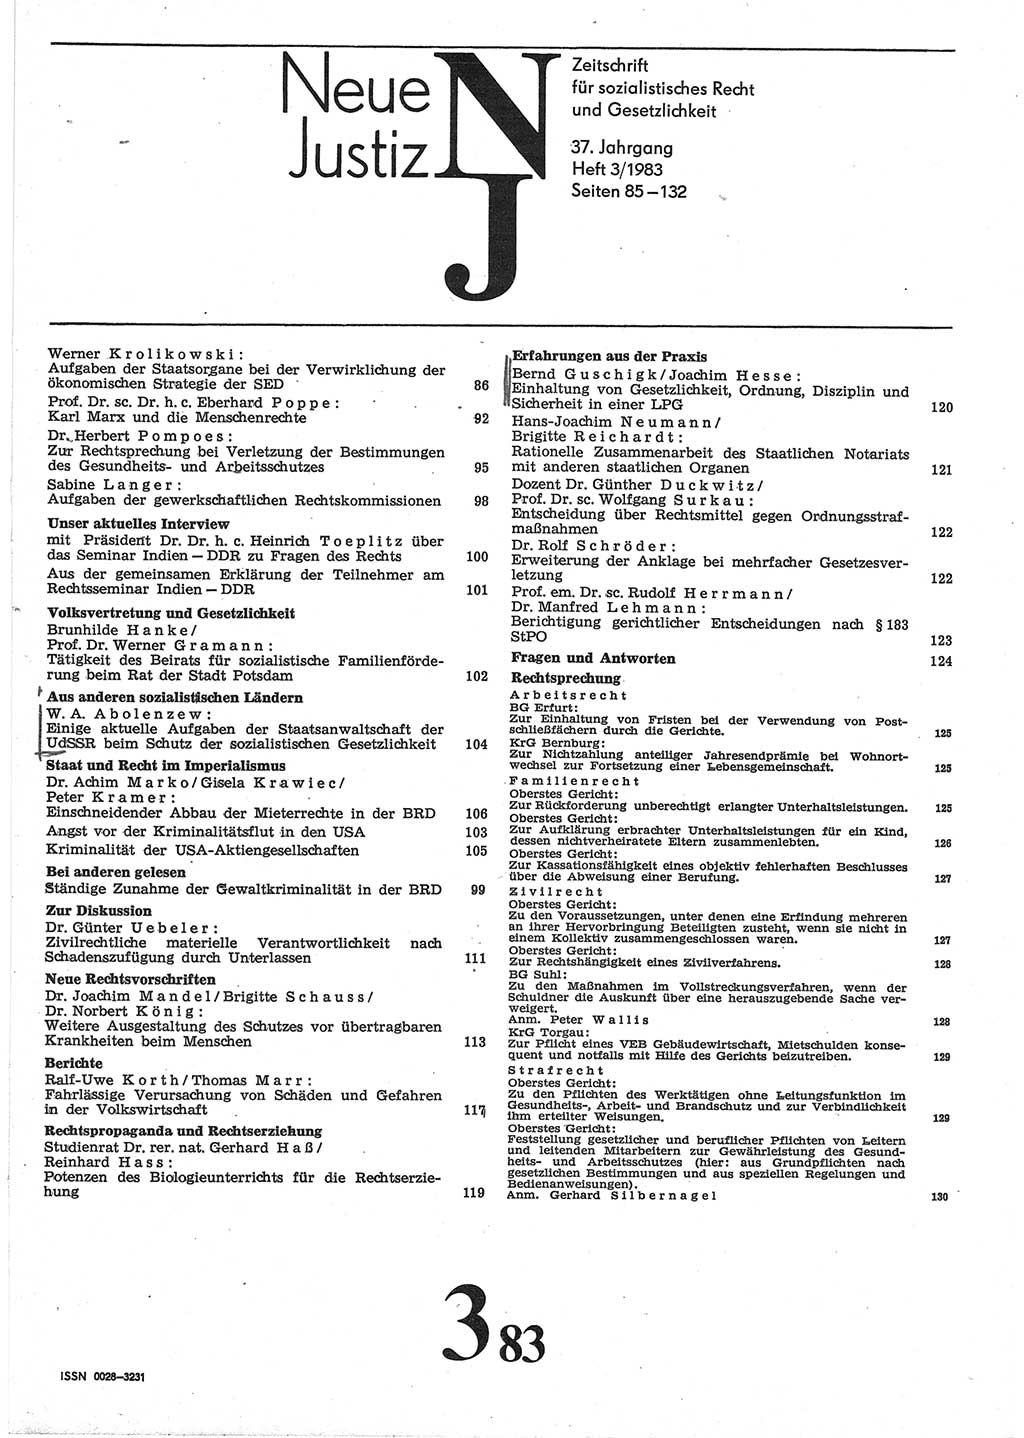 Neue Justiz (NJ), Zeitschrift für sozialistisches Recht und Gesetzlichkeit [Deutsche Demokratische Republik (DDR)], 37. Jahrgang 1983, Seite 85 (NJ DDR 1983, S. 85)